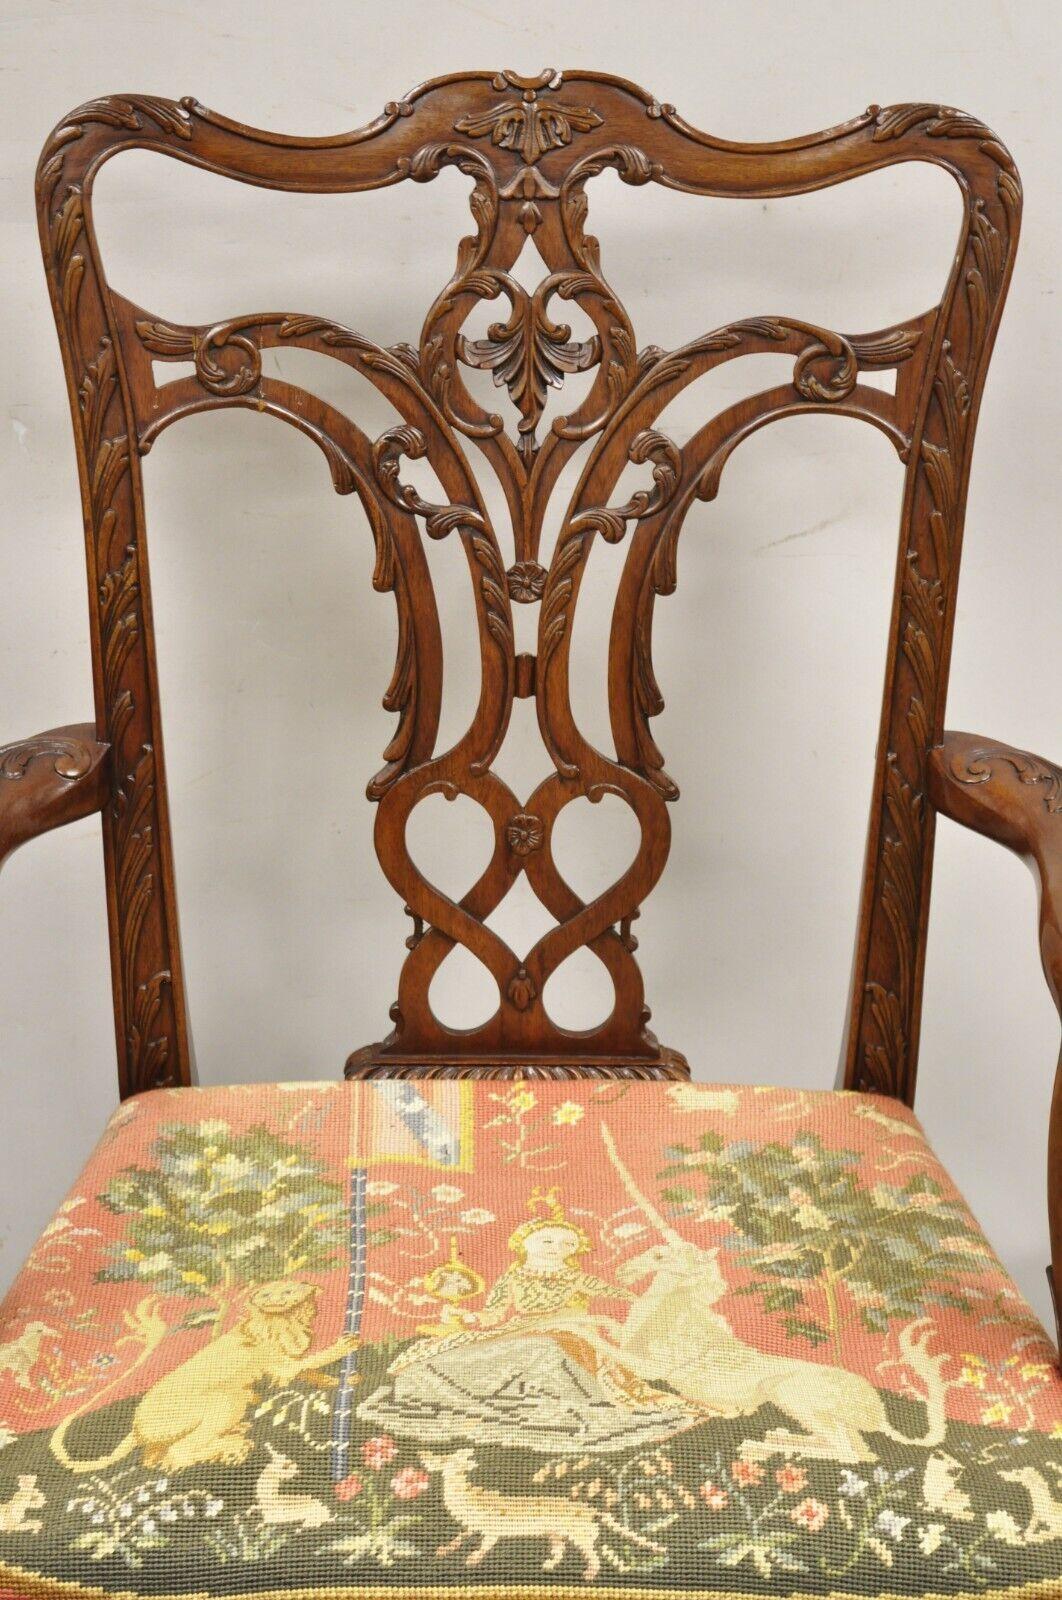 Paire de chaises à accoudoirs Maitland Smith de style géorgien en acajou sculpté avec assise en pointes d'aiguille. L'objet présente des sièges figuratifs à l'aiguille (le rembourrage du siège est visiblement bosselé), des cadres en bois massif, un